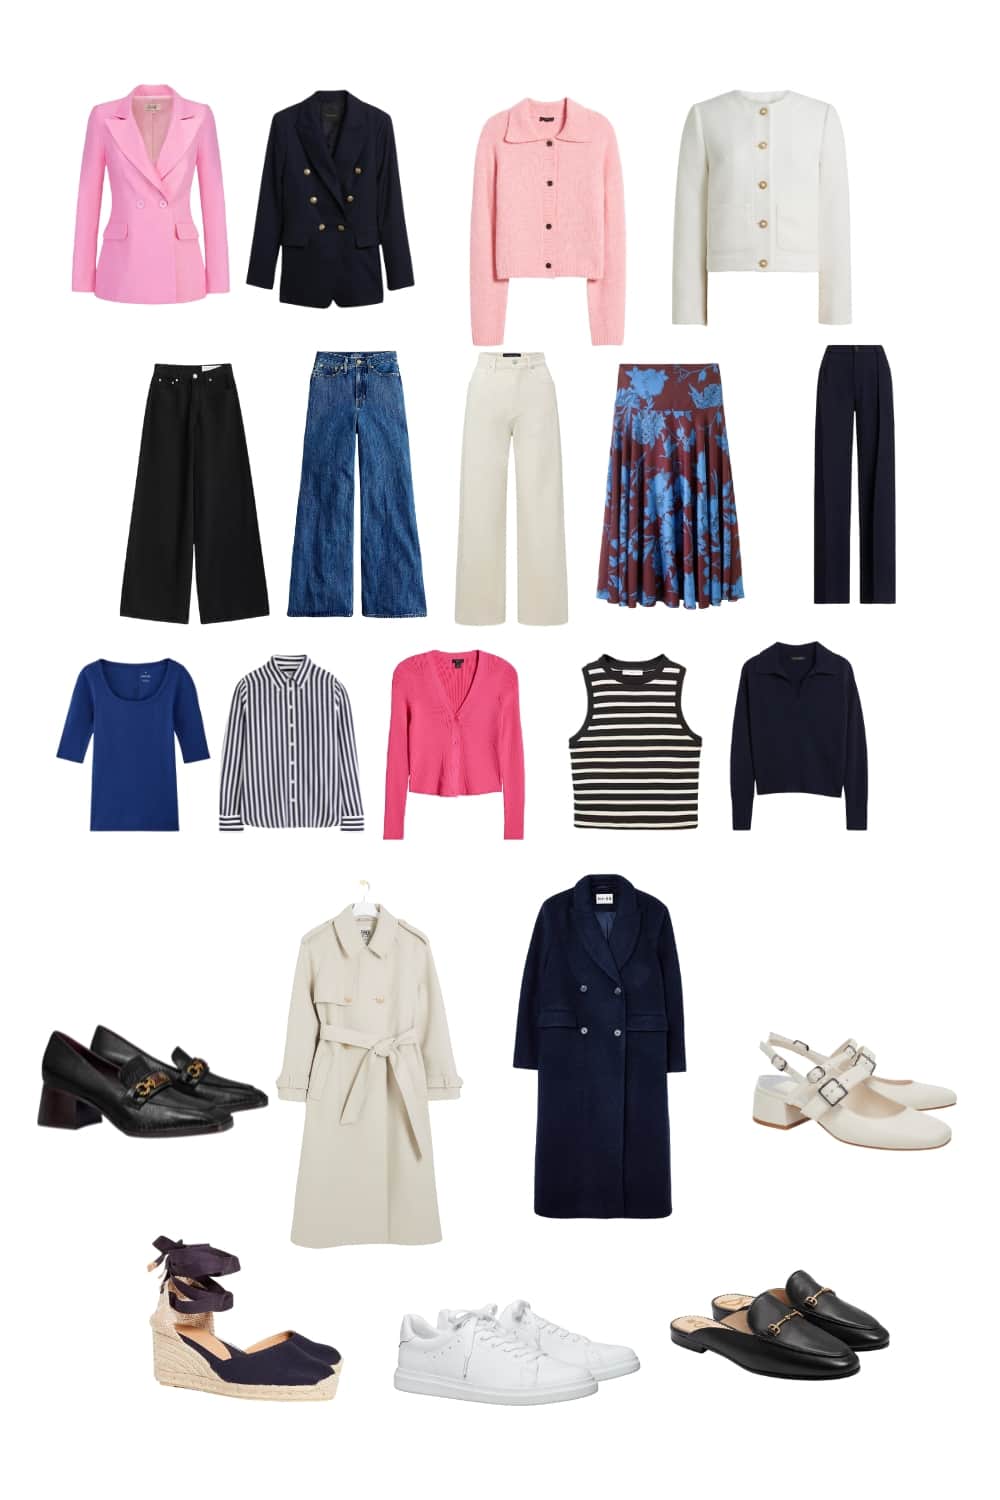 Spring Capsule wardrobe checklist